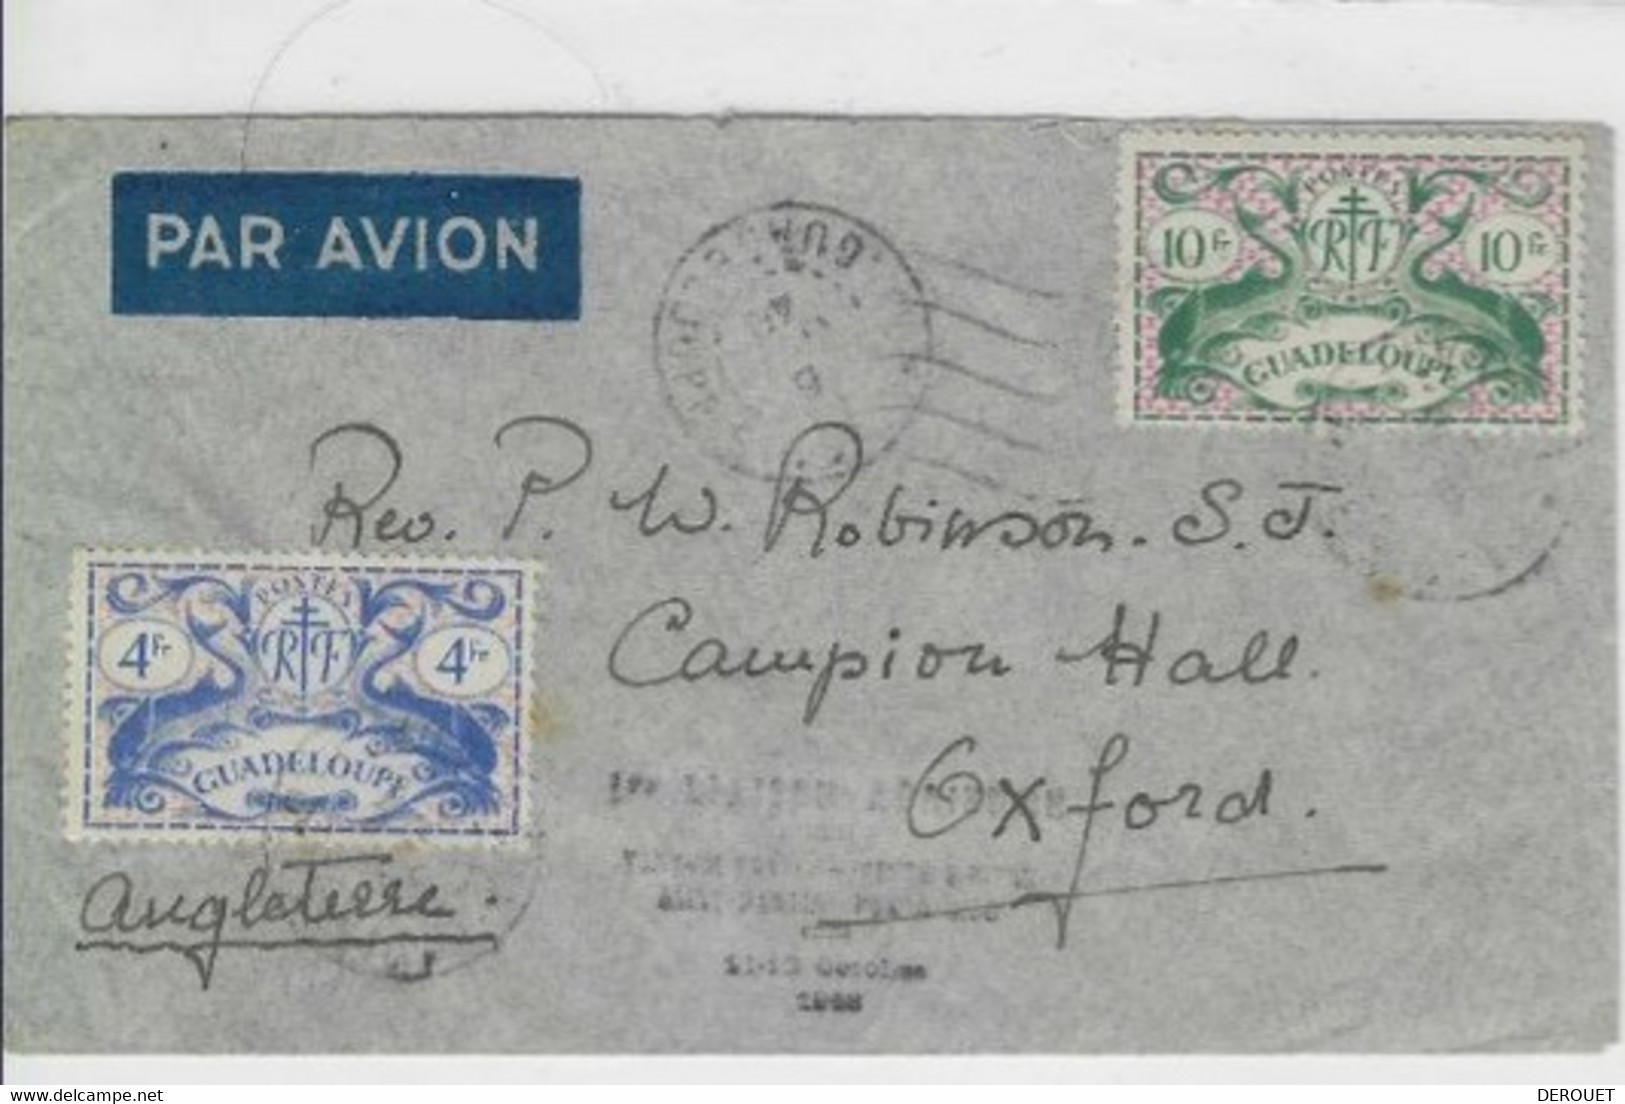 Air France - 11 10 1948 - Première Liaison Pointe à Pitre - Saint Martin - Sanjuan (Porto Rico) - Poste Aérienne